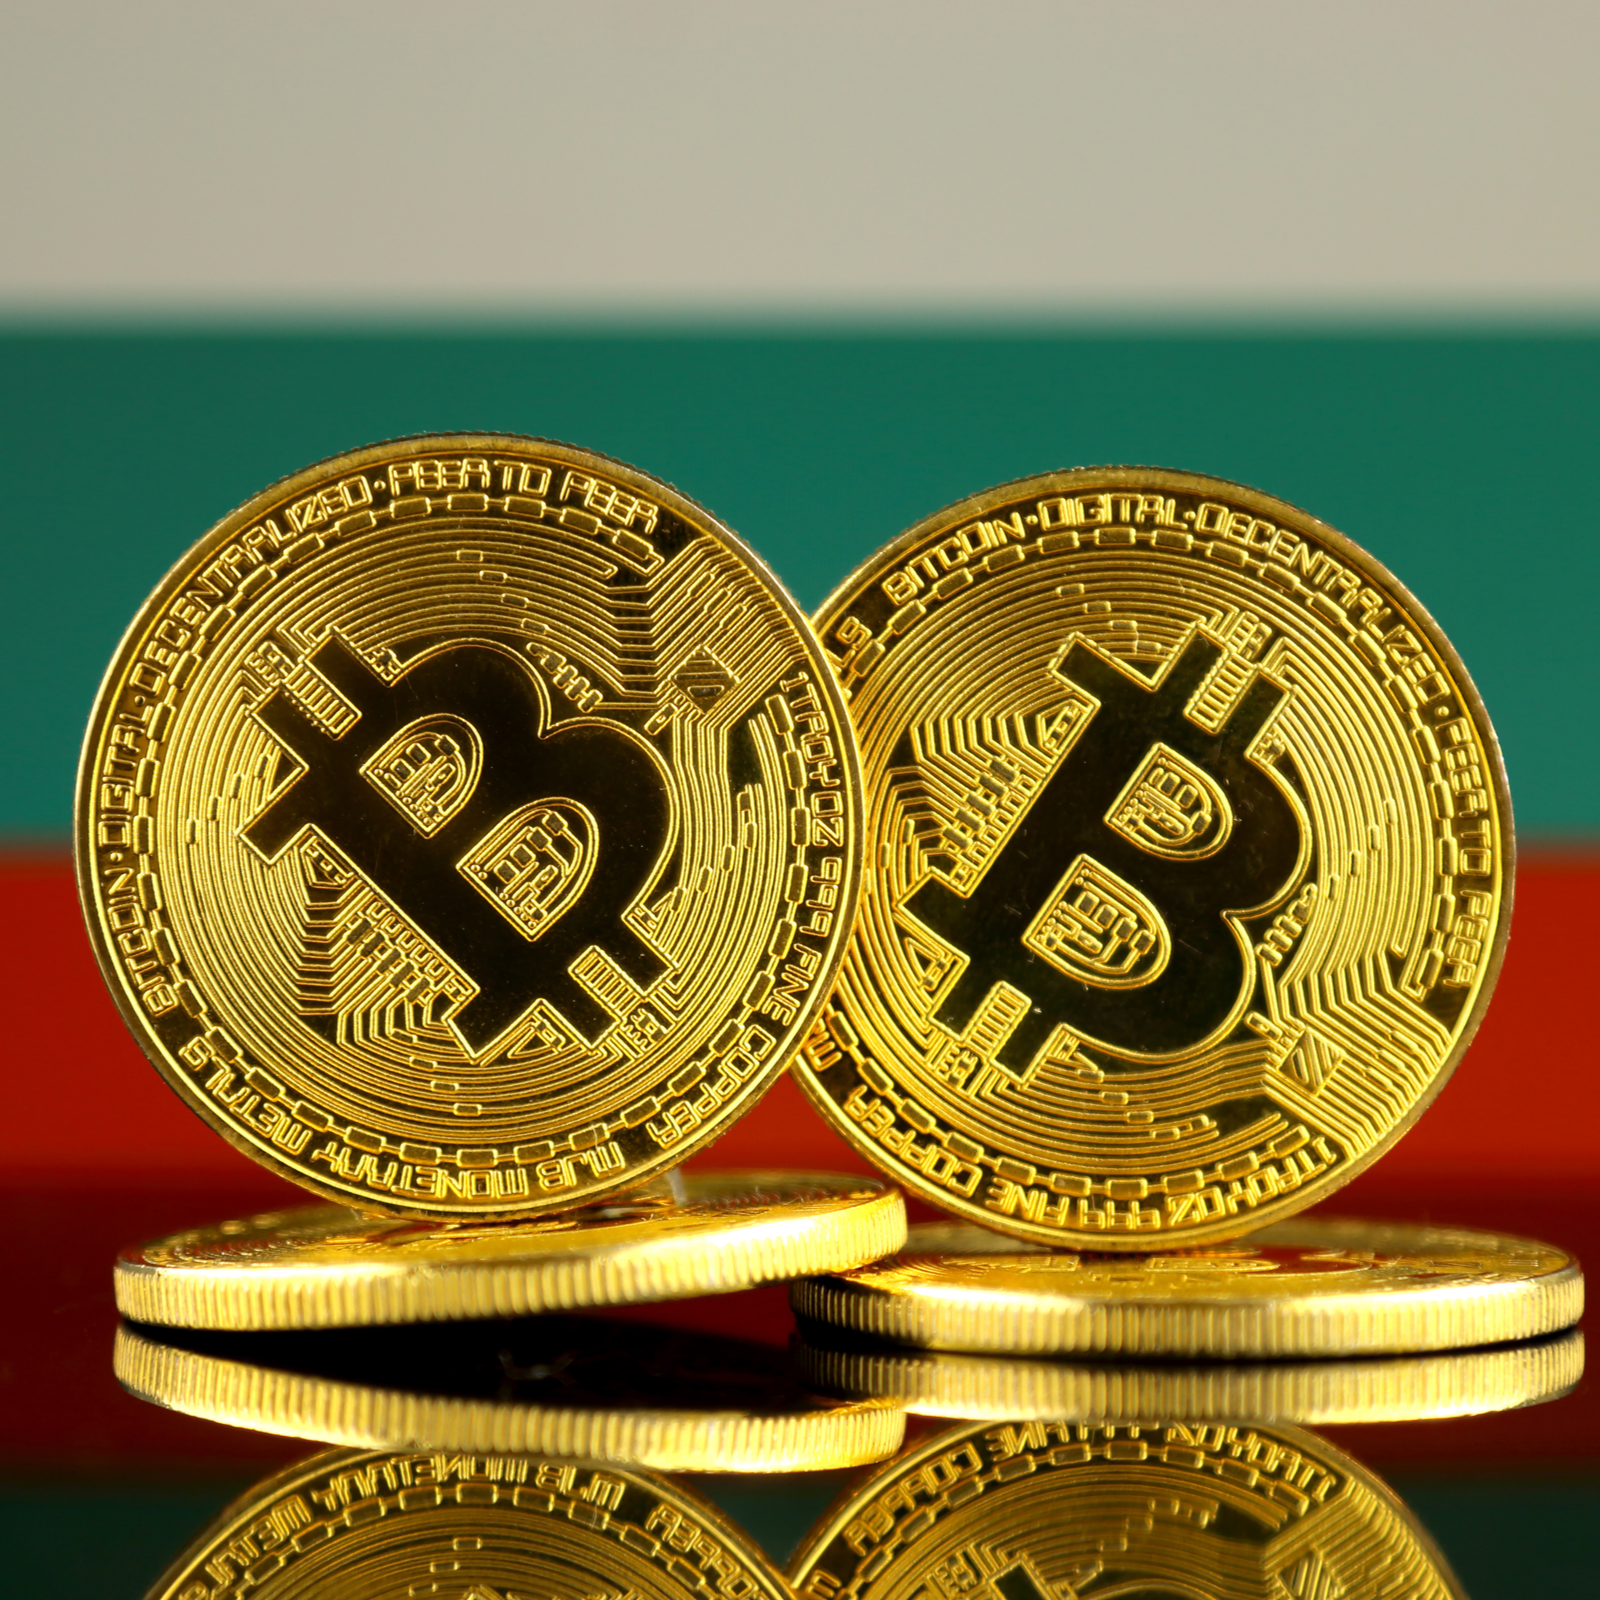 Parduoti bitkoinų gali ir nebepavykti – pradėjo blokuoti lietuvių sąskaitas - LRT